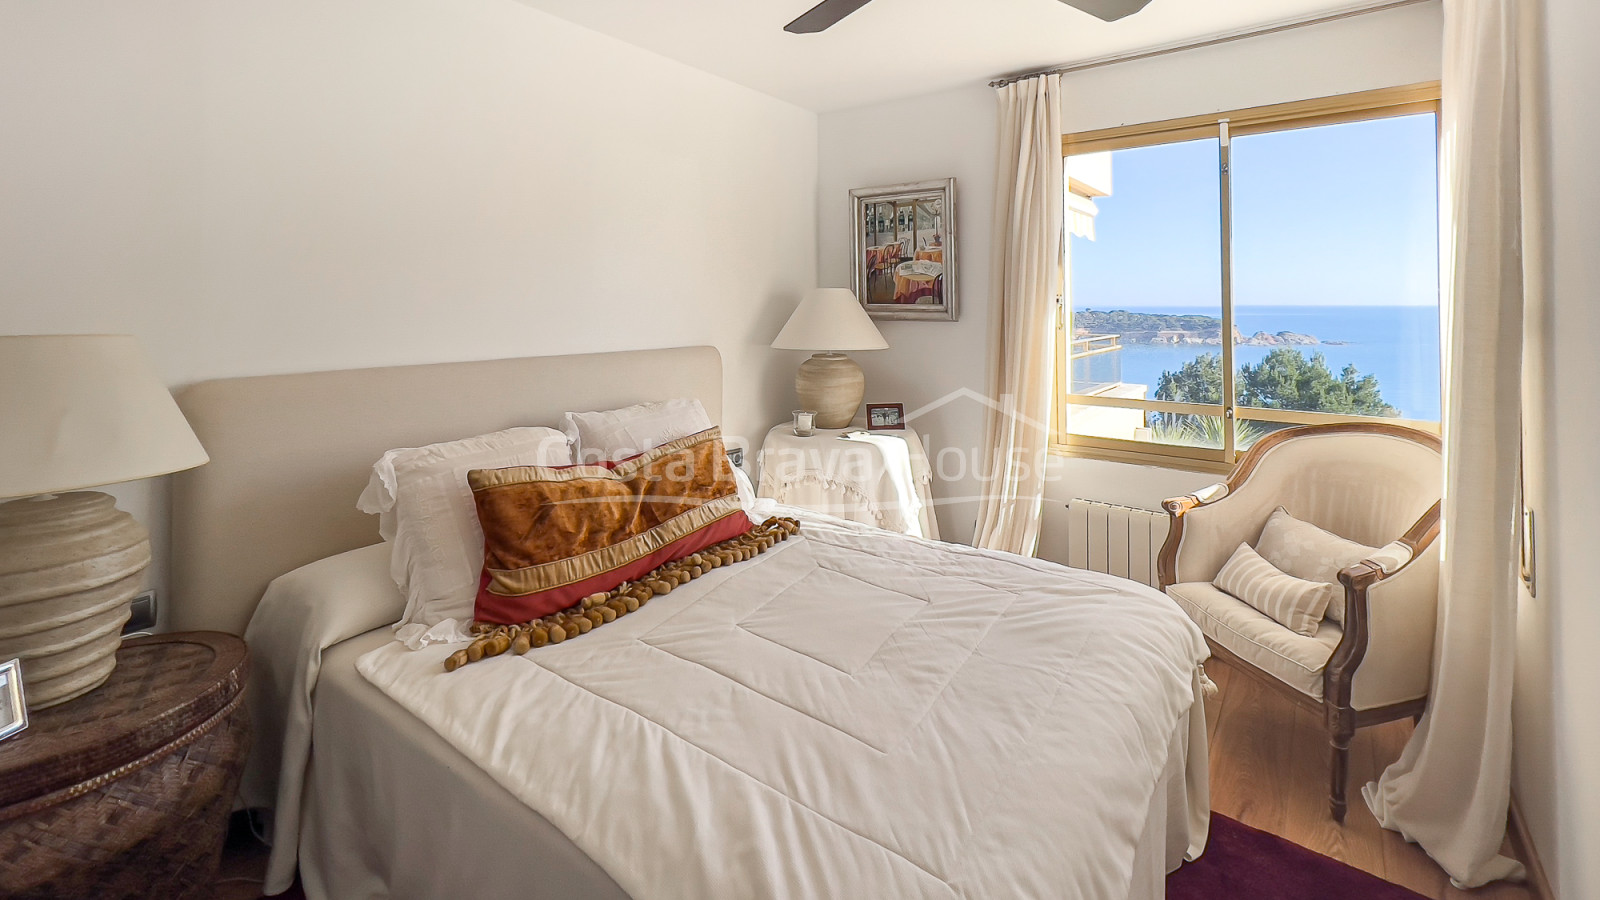 Apartament amb vistes al mar a Sant Feliu de Guíxols